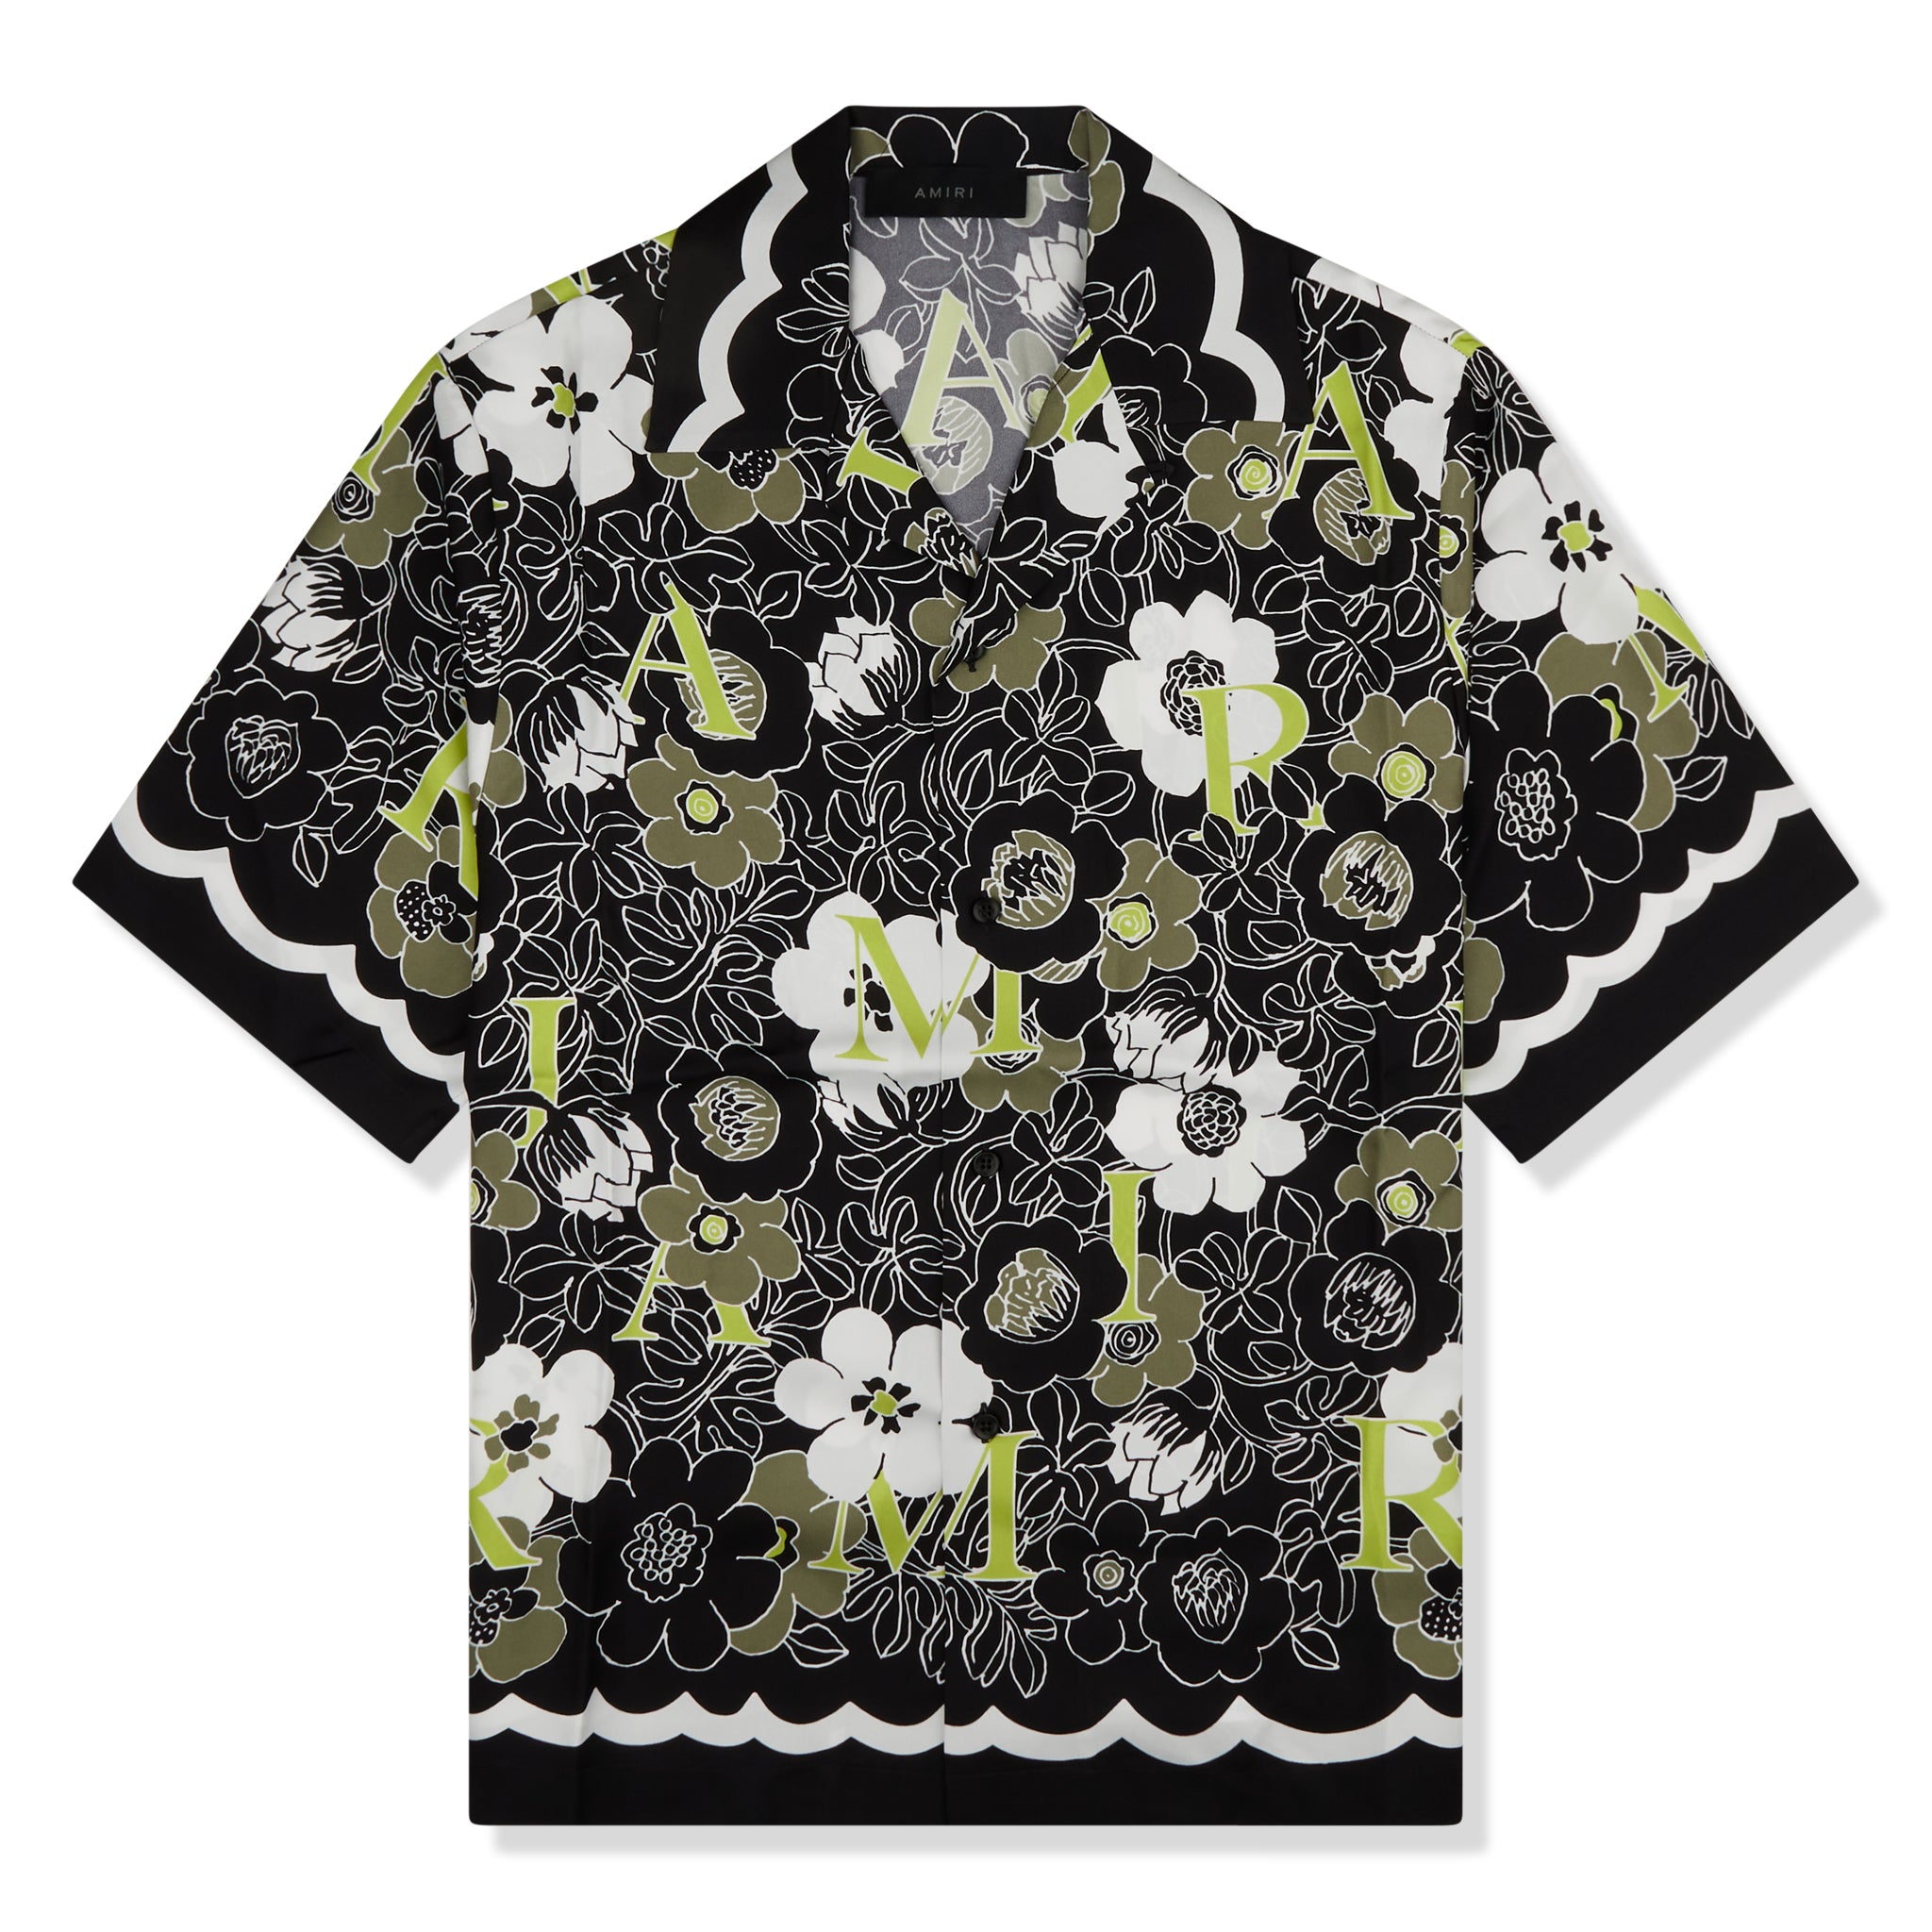 Louis Vuitton - Authenticated T-Shirt - Cotton Multicolour for Men, Never Worn